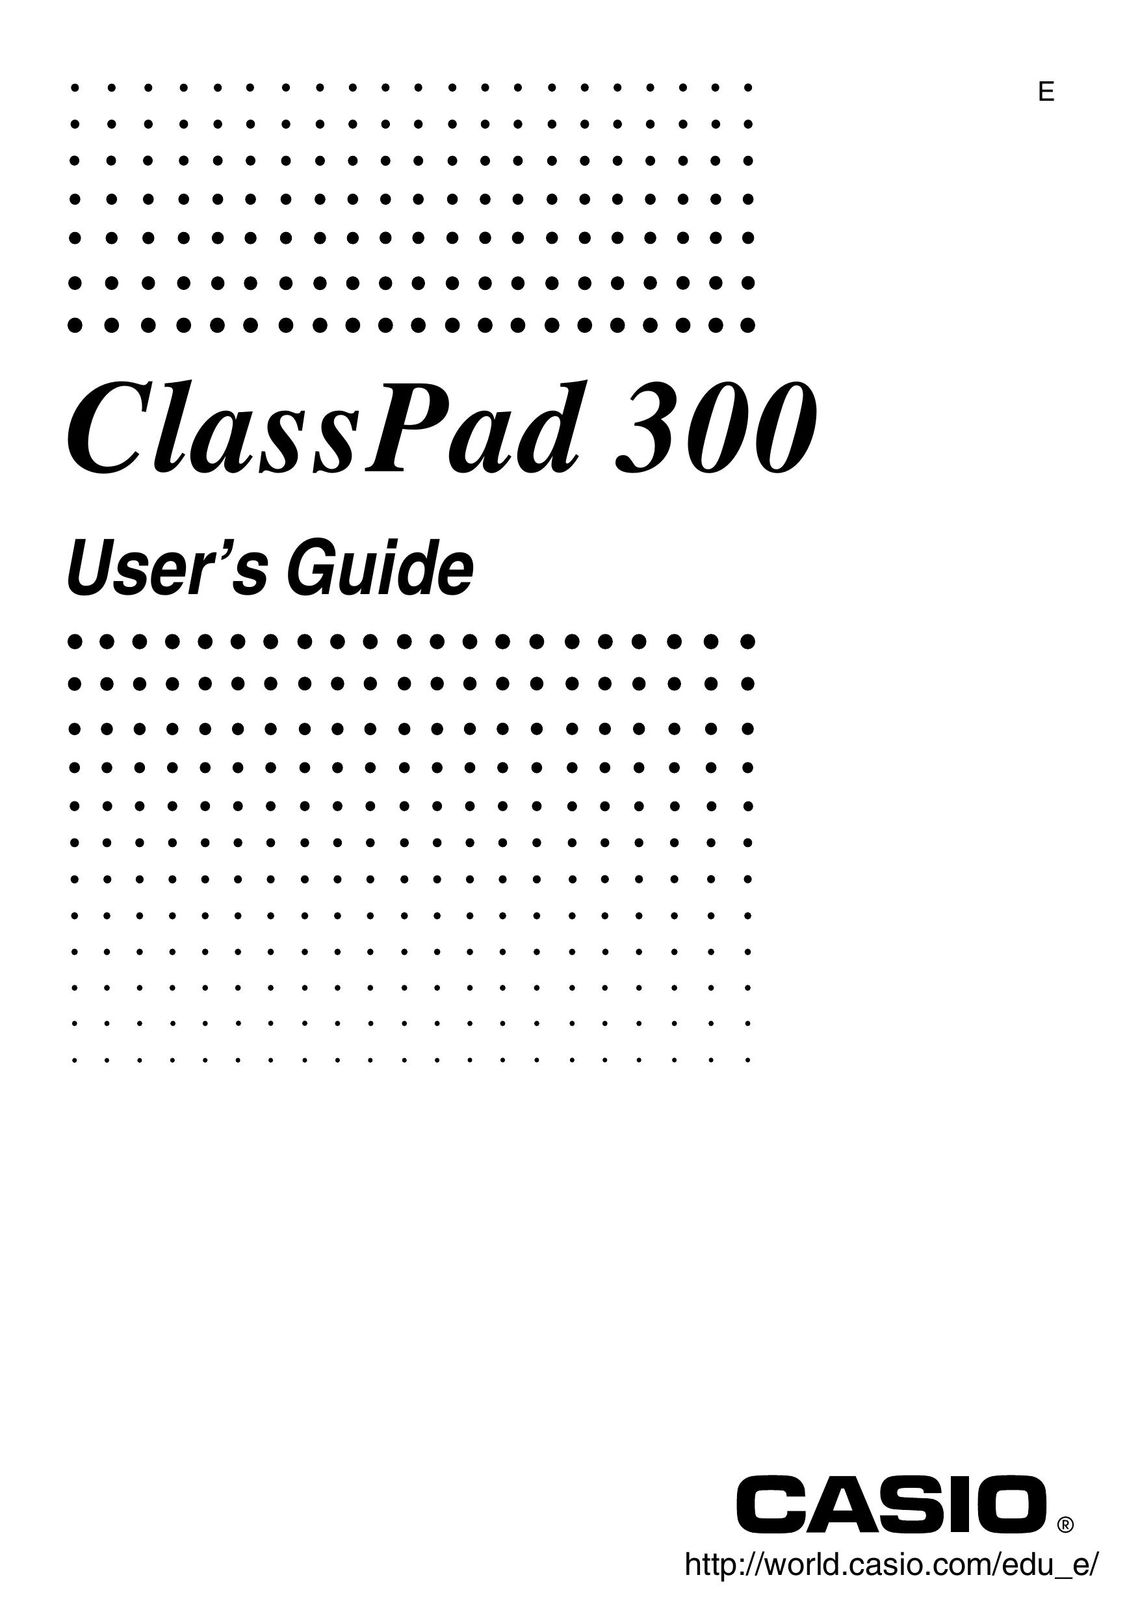 Casio ClassPad 300 Calculator User Manual